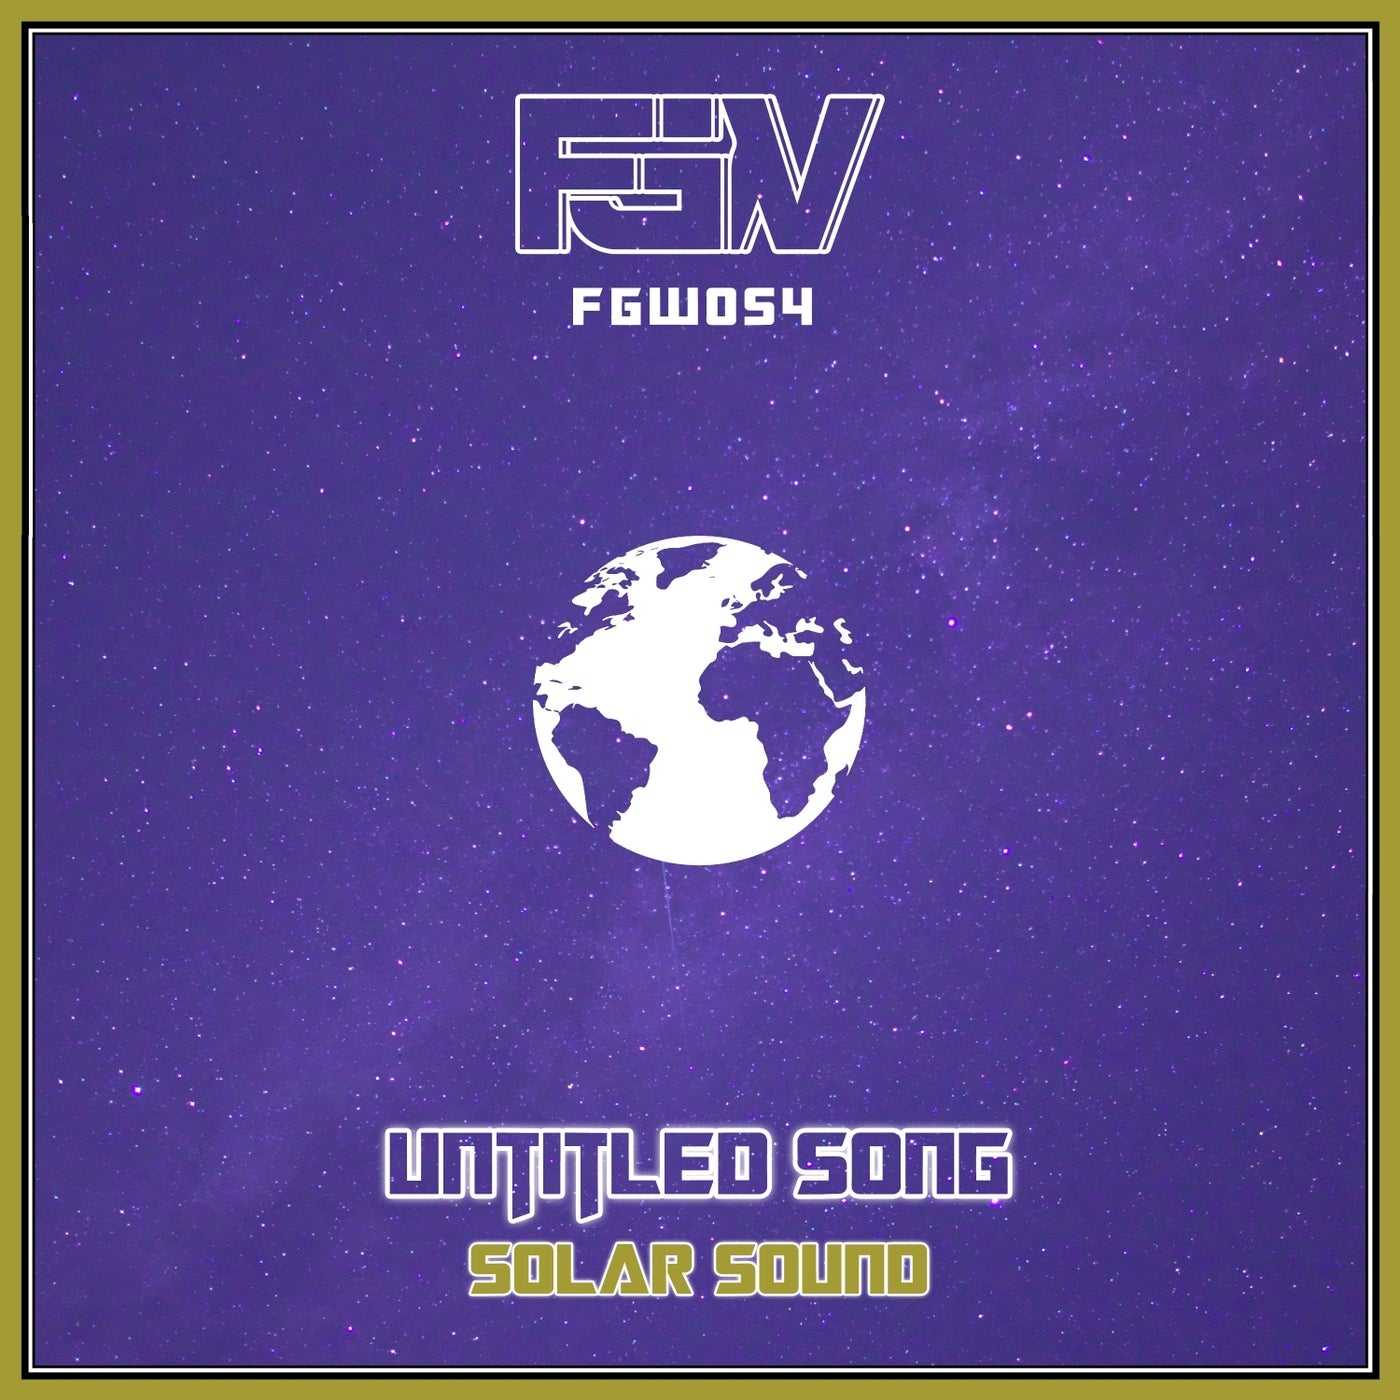 Solar Sound – Untitled Song [FGW054]